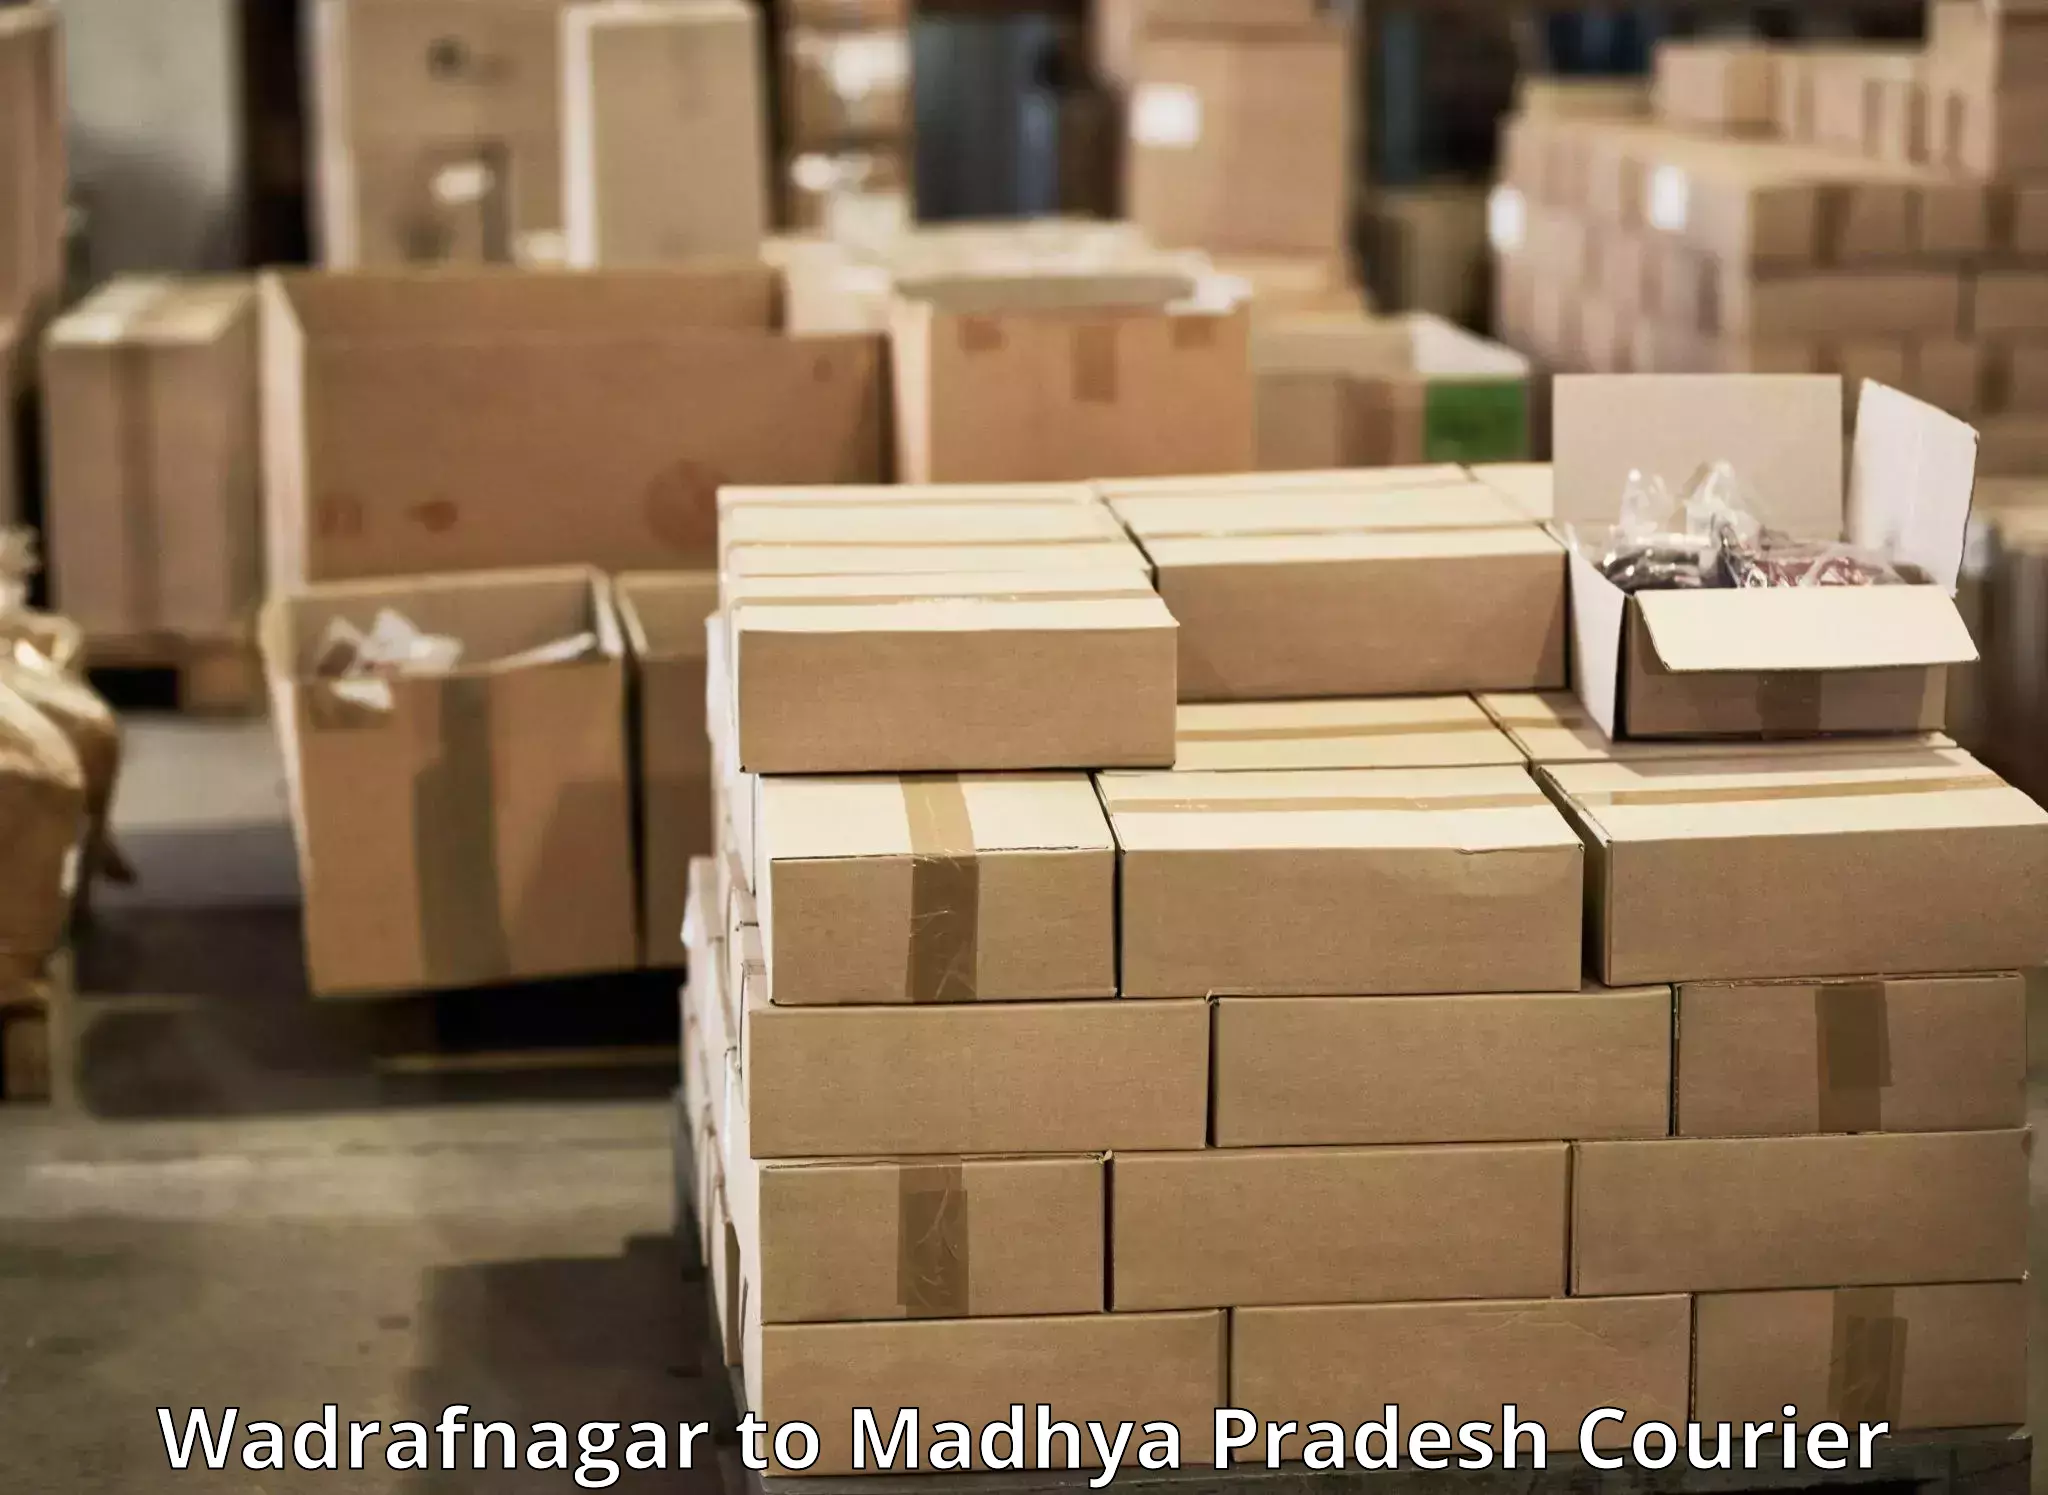 Express delivery solutions Wadrafnagar to Dindori